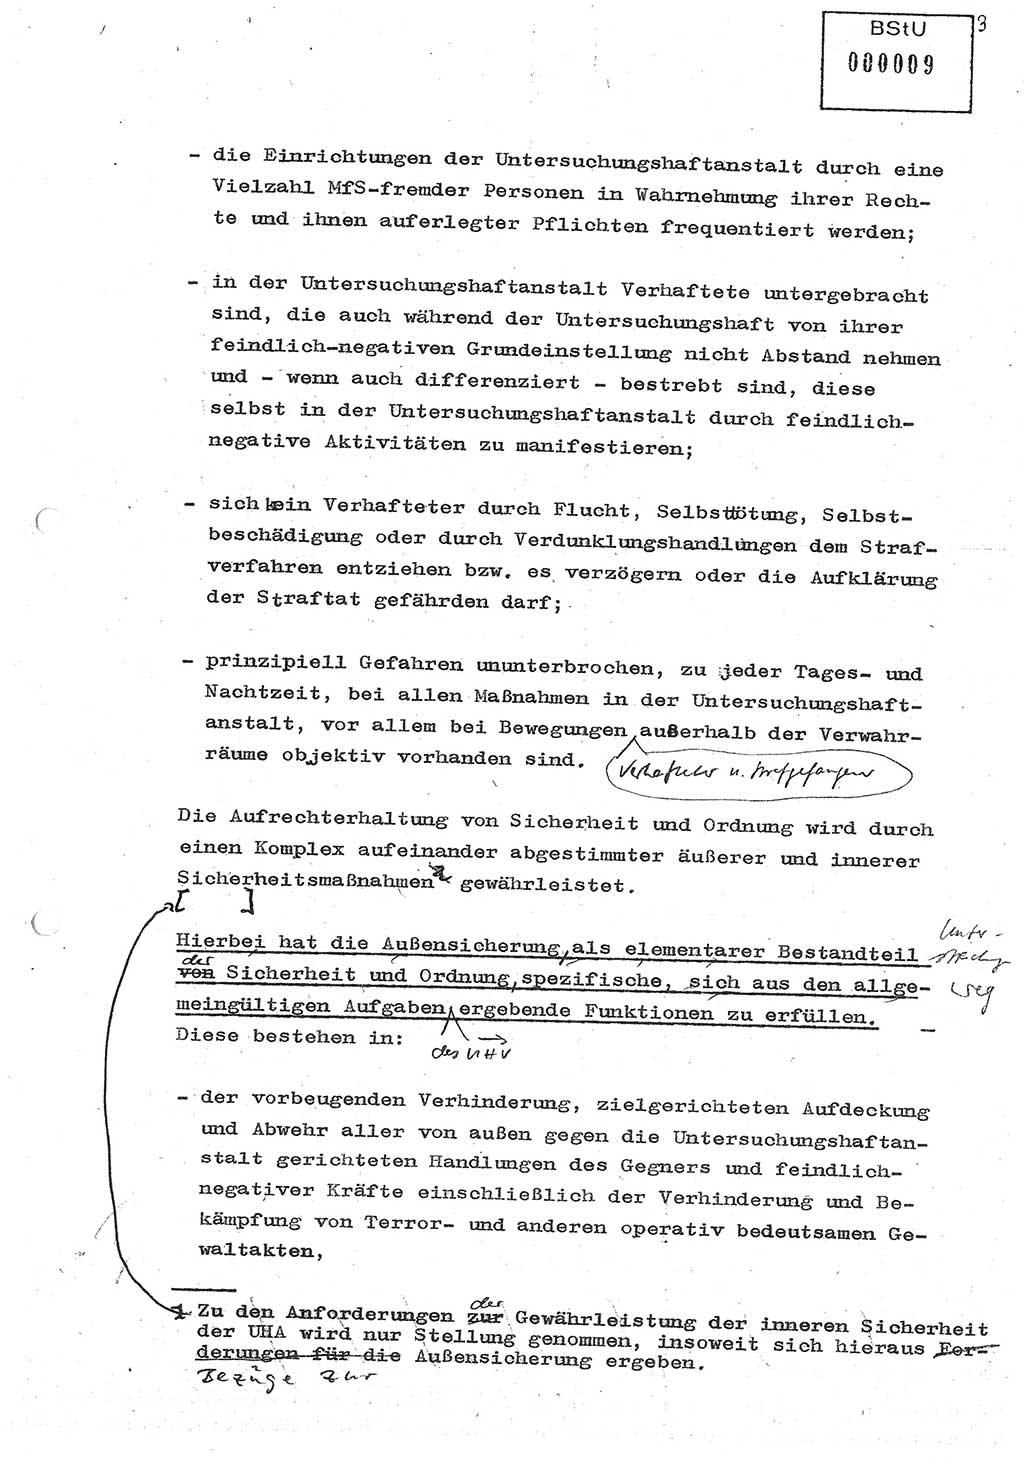 Diplomarbeit (Entwurf) Oberleutnant Peter Parke (Abt. ⅩⅣ), Ministerium für Staatssicherheit (MfS) [Deutsche Demokratische Republik (DDR)], Juristische Hochschule (JHS), Geheime Verschlußsache (GVS) o001-98/86, Potsdam 1986, Seite 9 (Dipl.-Arb. MfS DDR JHS GVS o001-98/86 1986, S. 9)